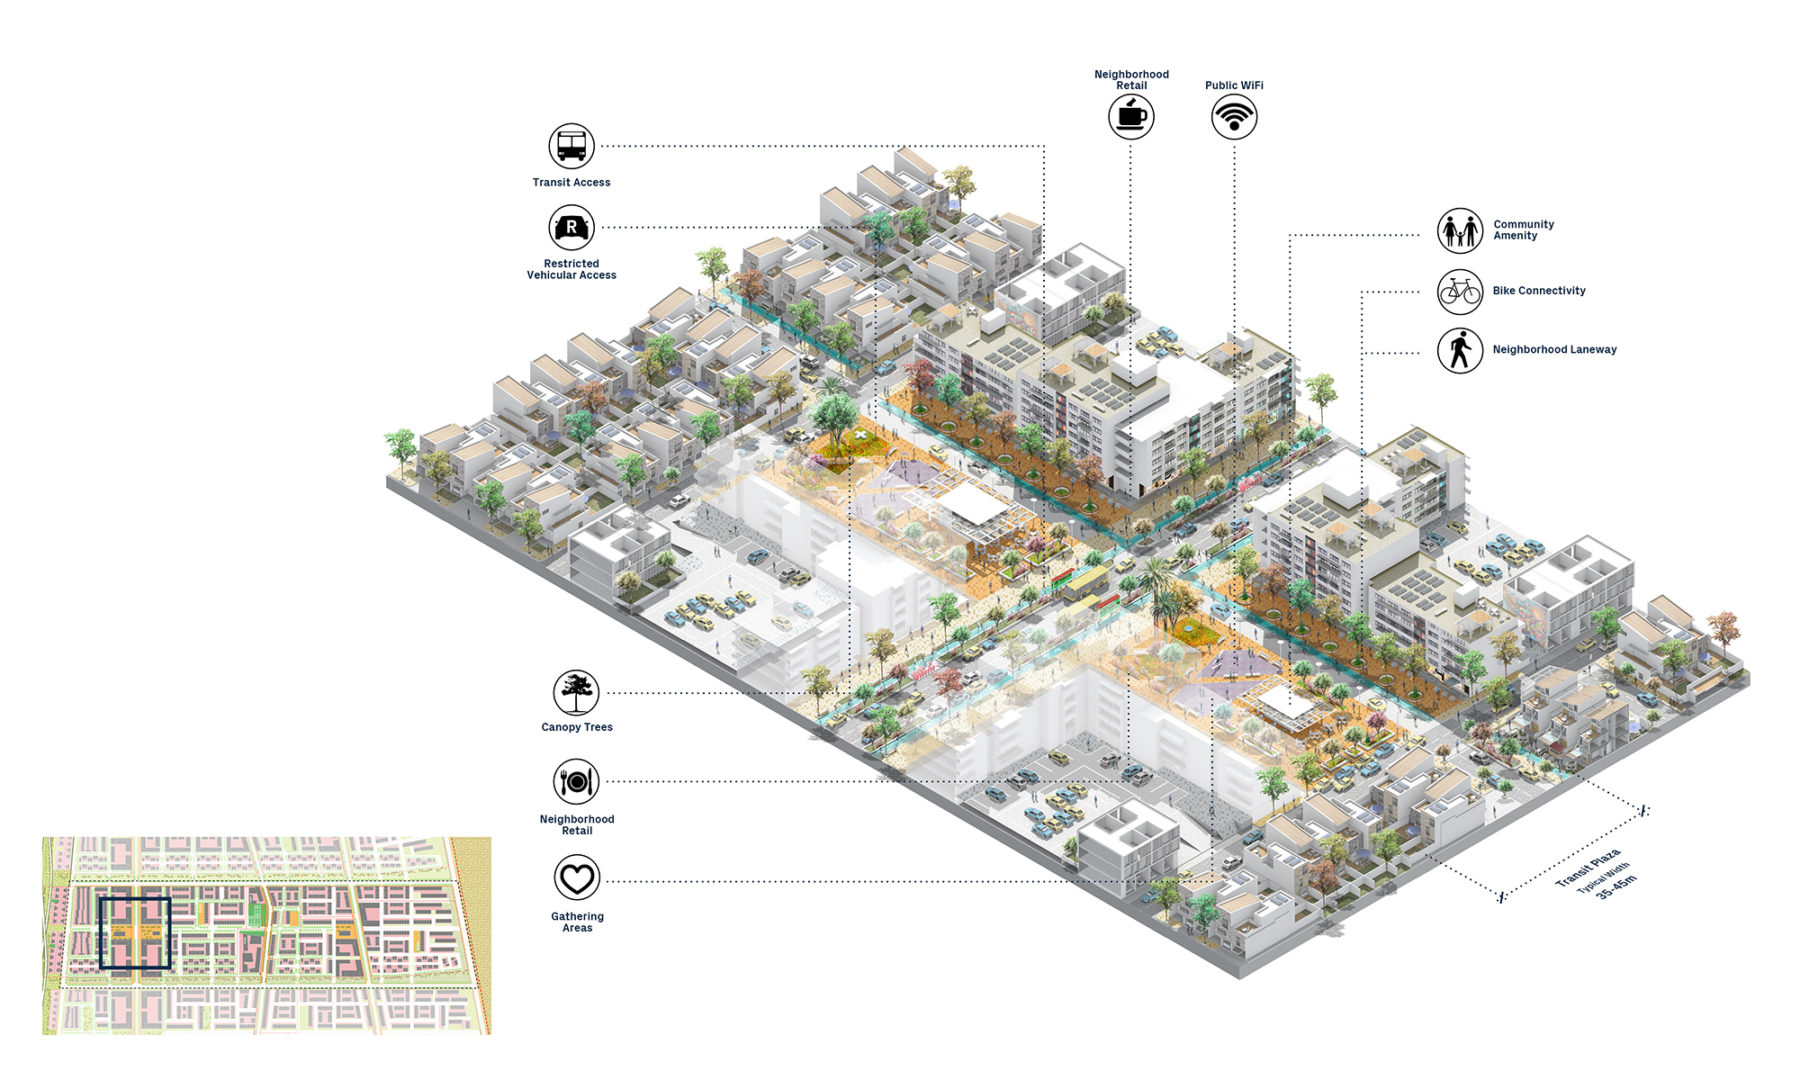 axon diagram of housing neighborhood